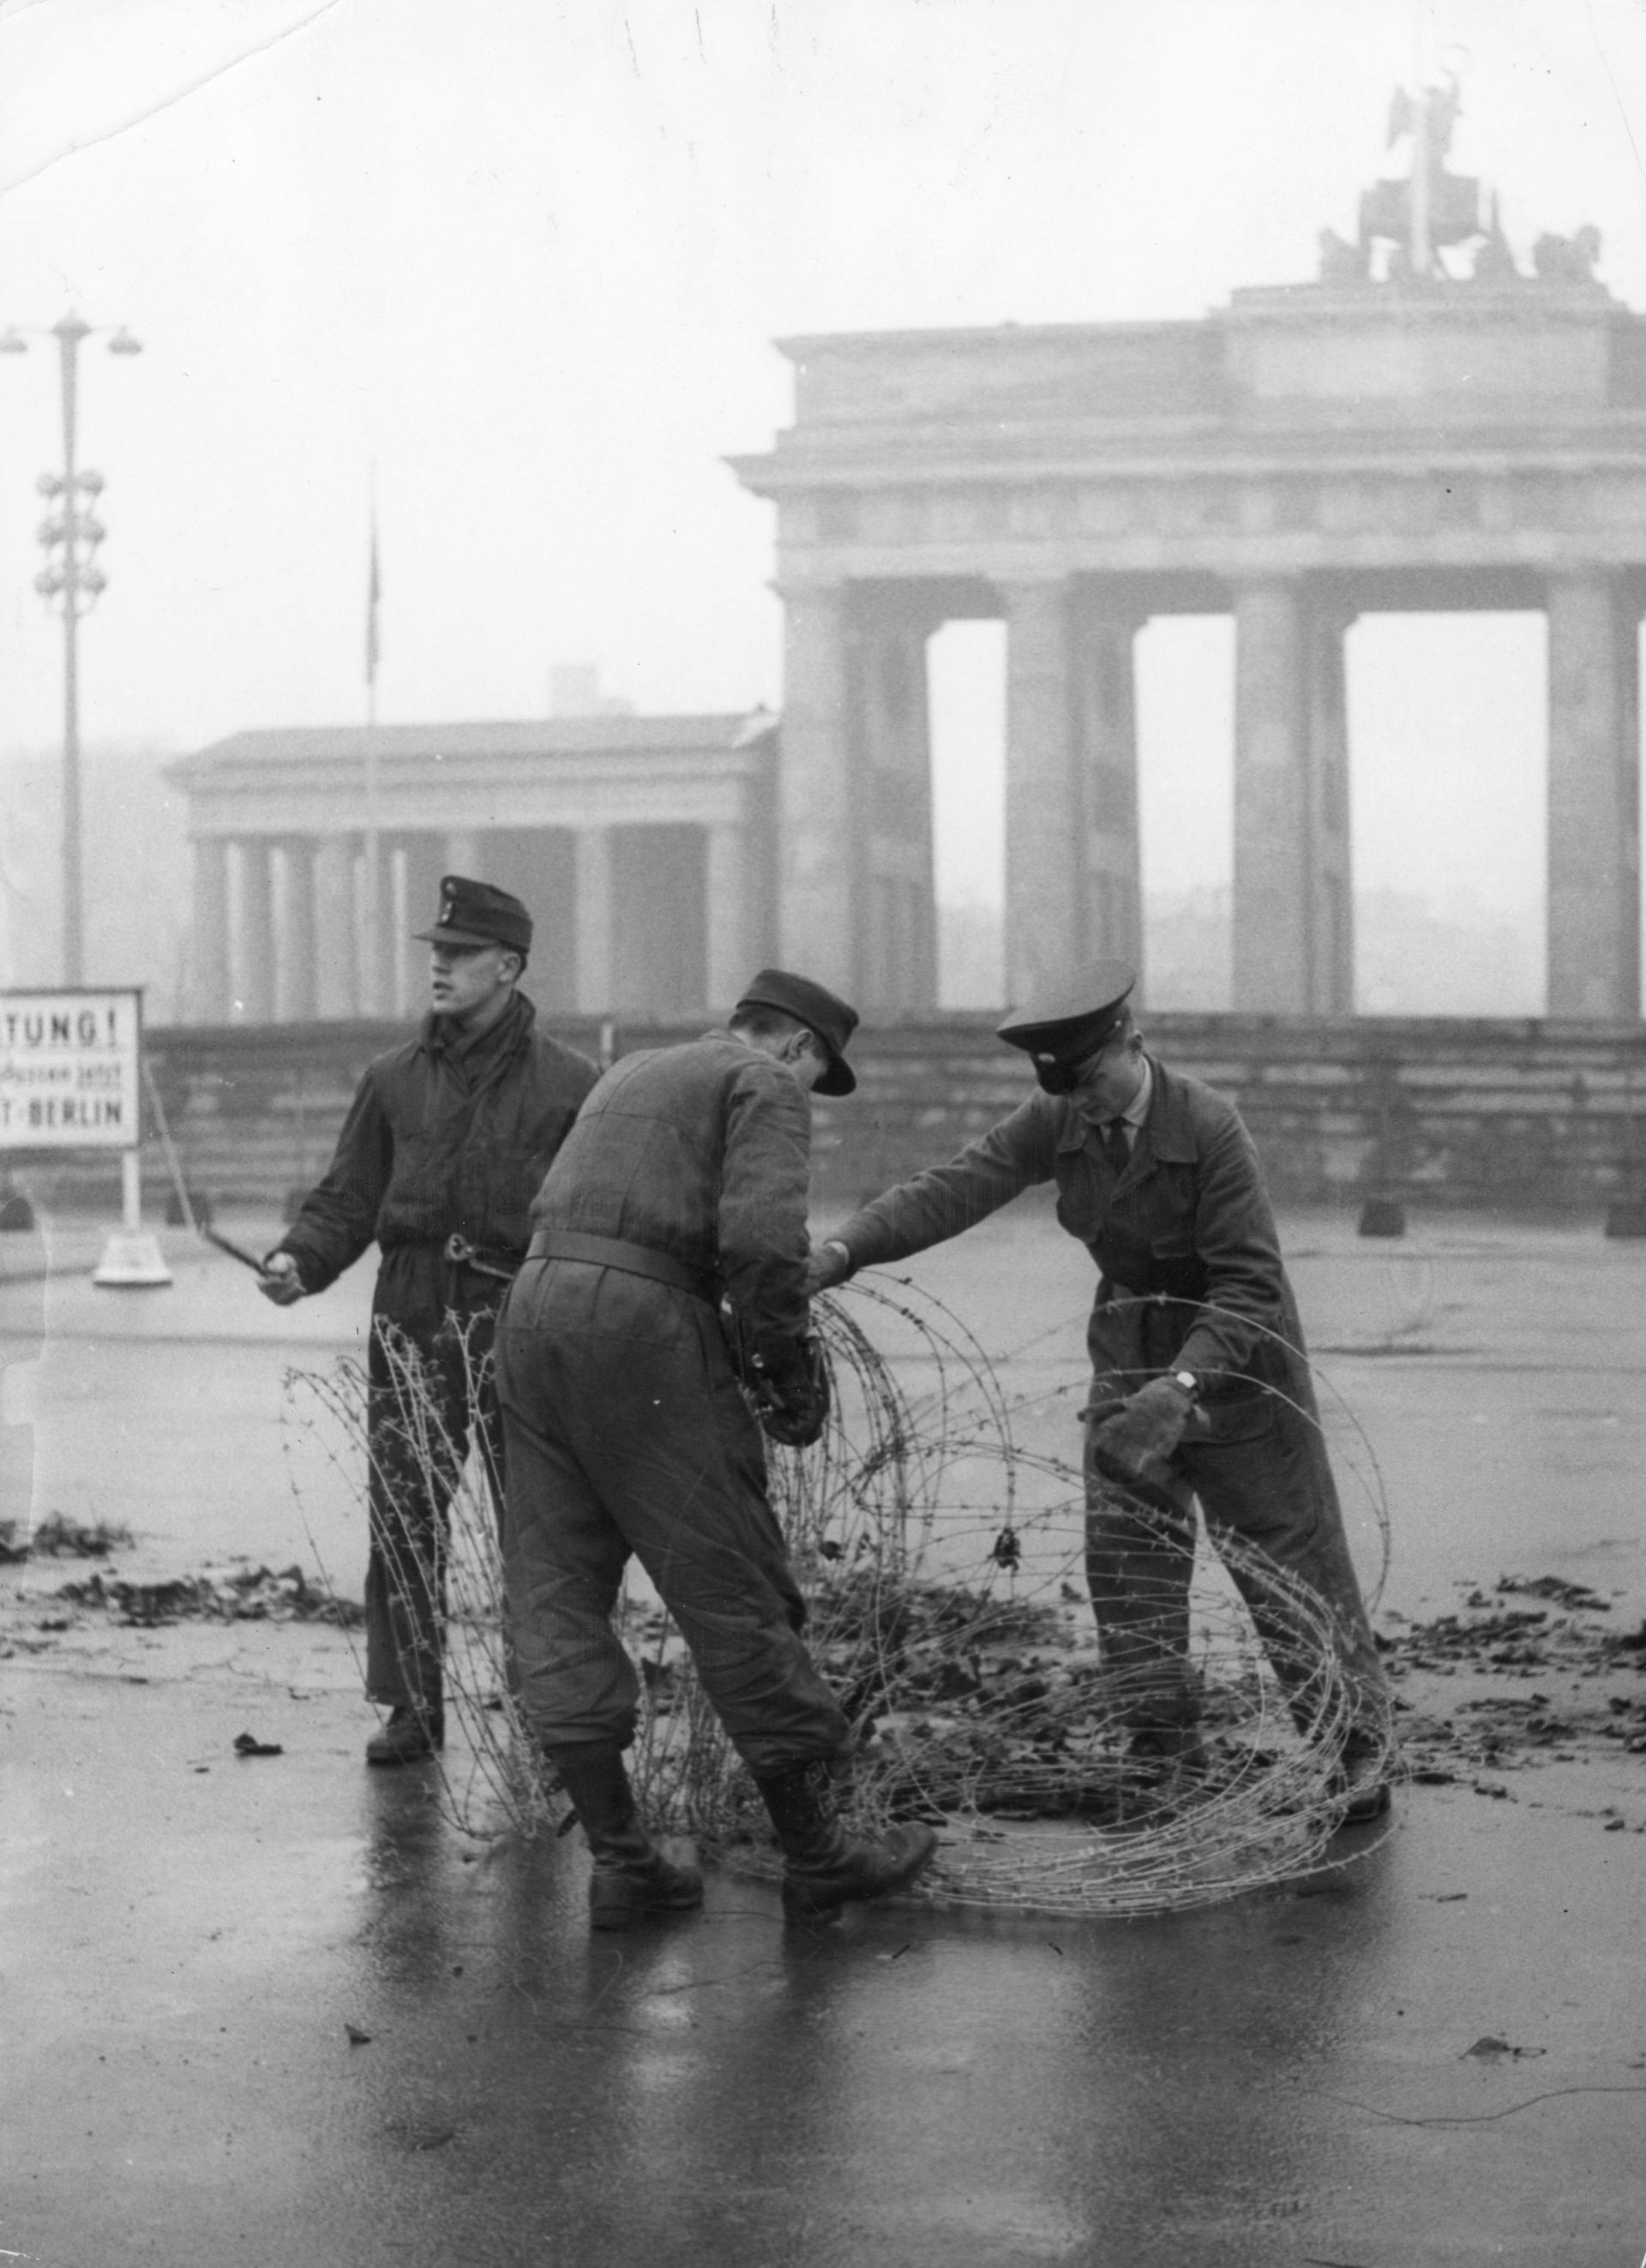 28 ноември 1961 г., Западeн Берлин, полицаи отстраняват бодлива тел от западната страна на Берлинската Бранденбургска врата пред Берлинската стена